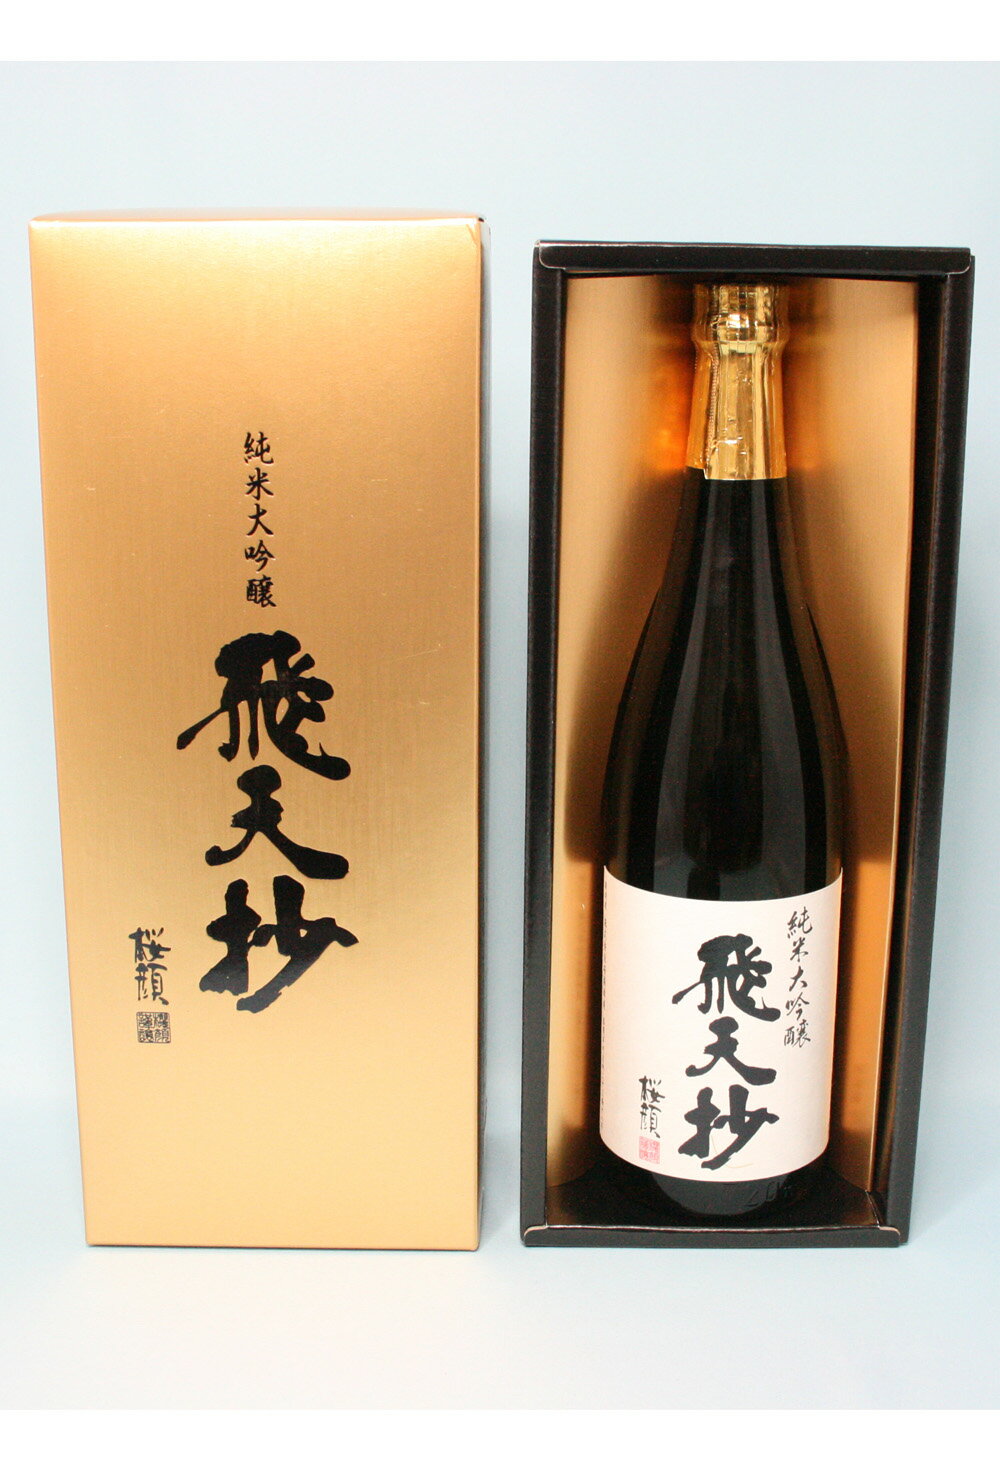 桜顔 純米大吟醸「飛天抄」 720ml(箱入)『酒』